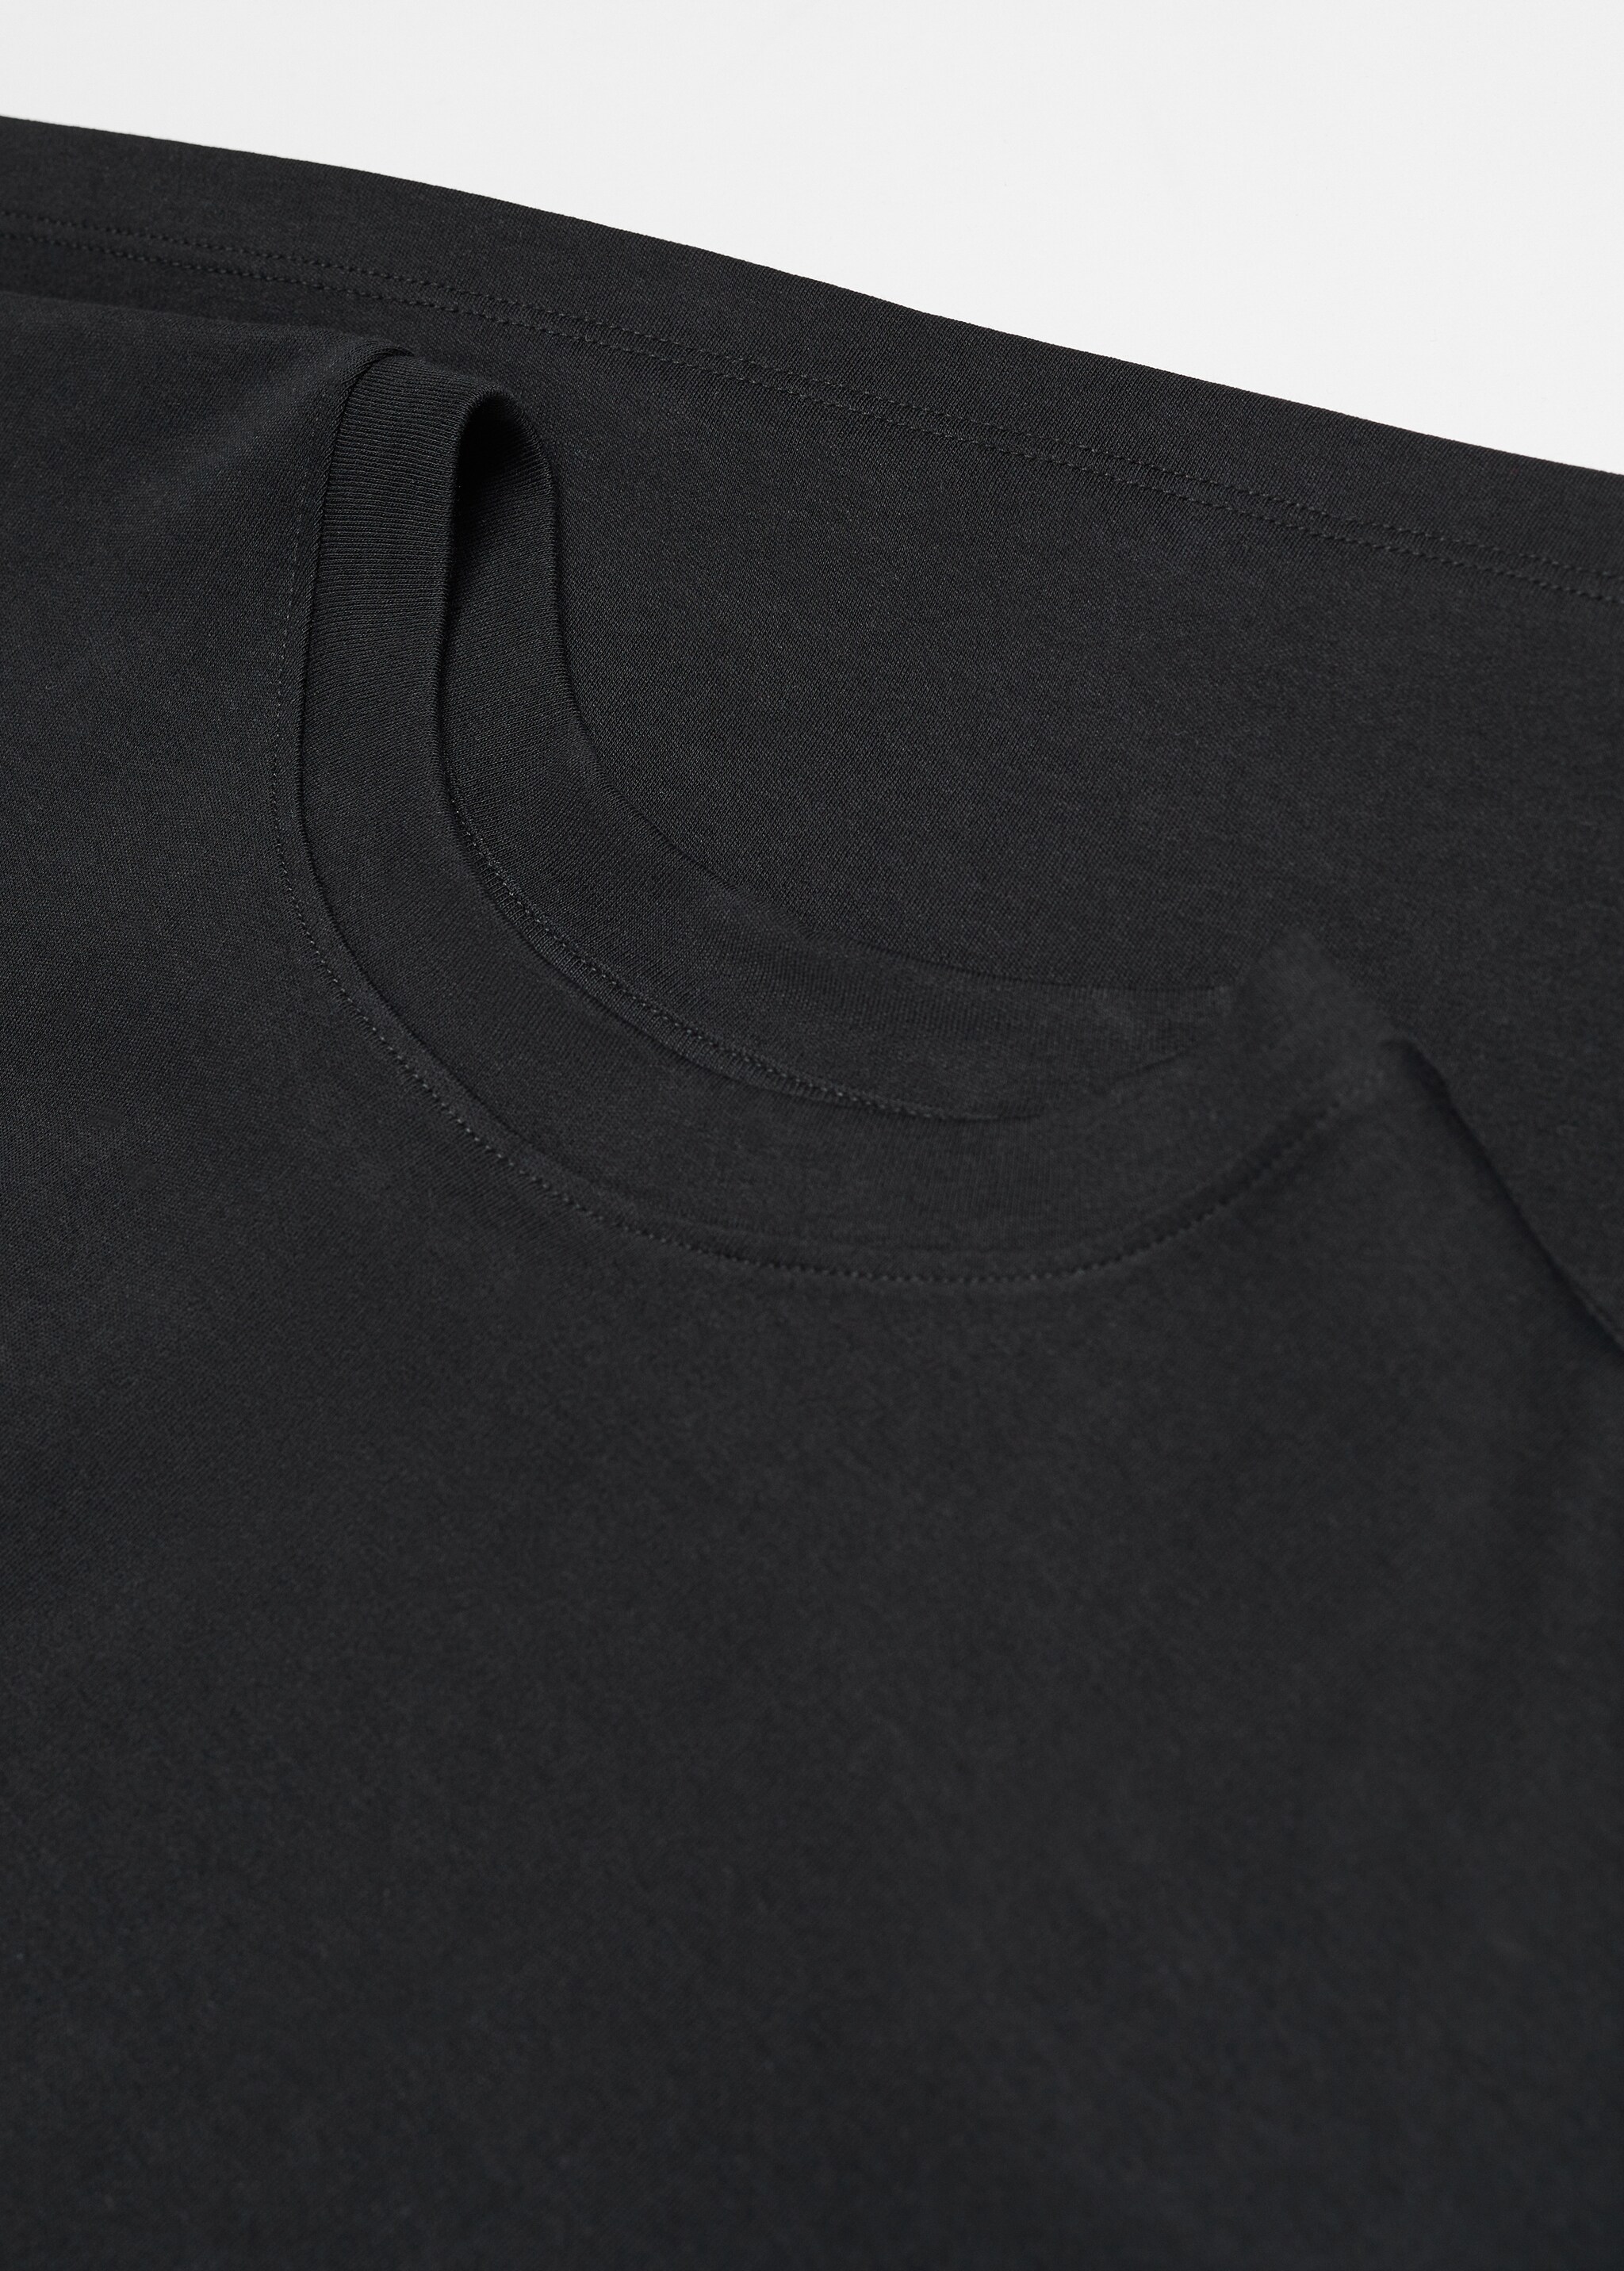 Camiseta oversize algodón - Detalle del artículo 8